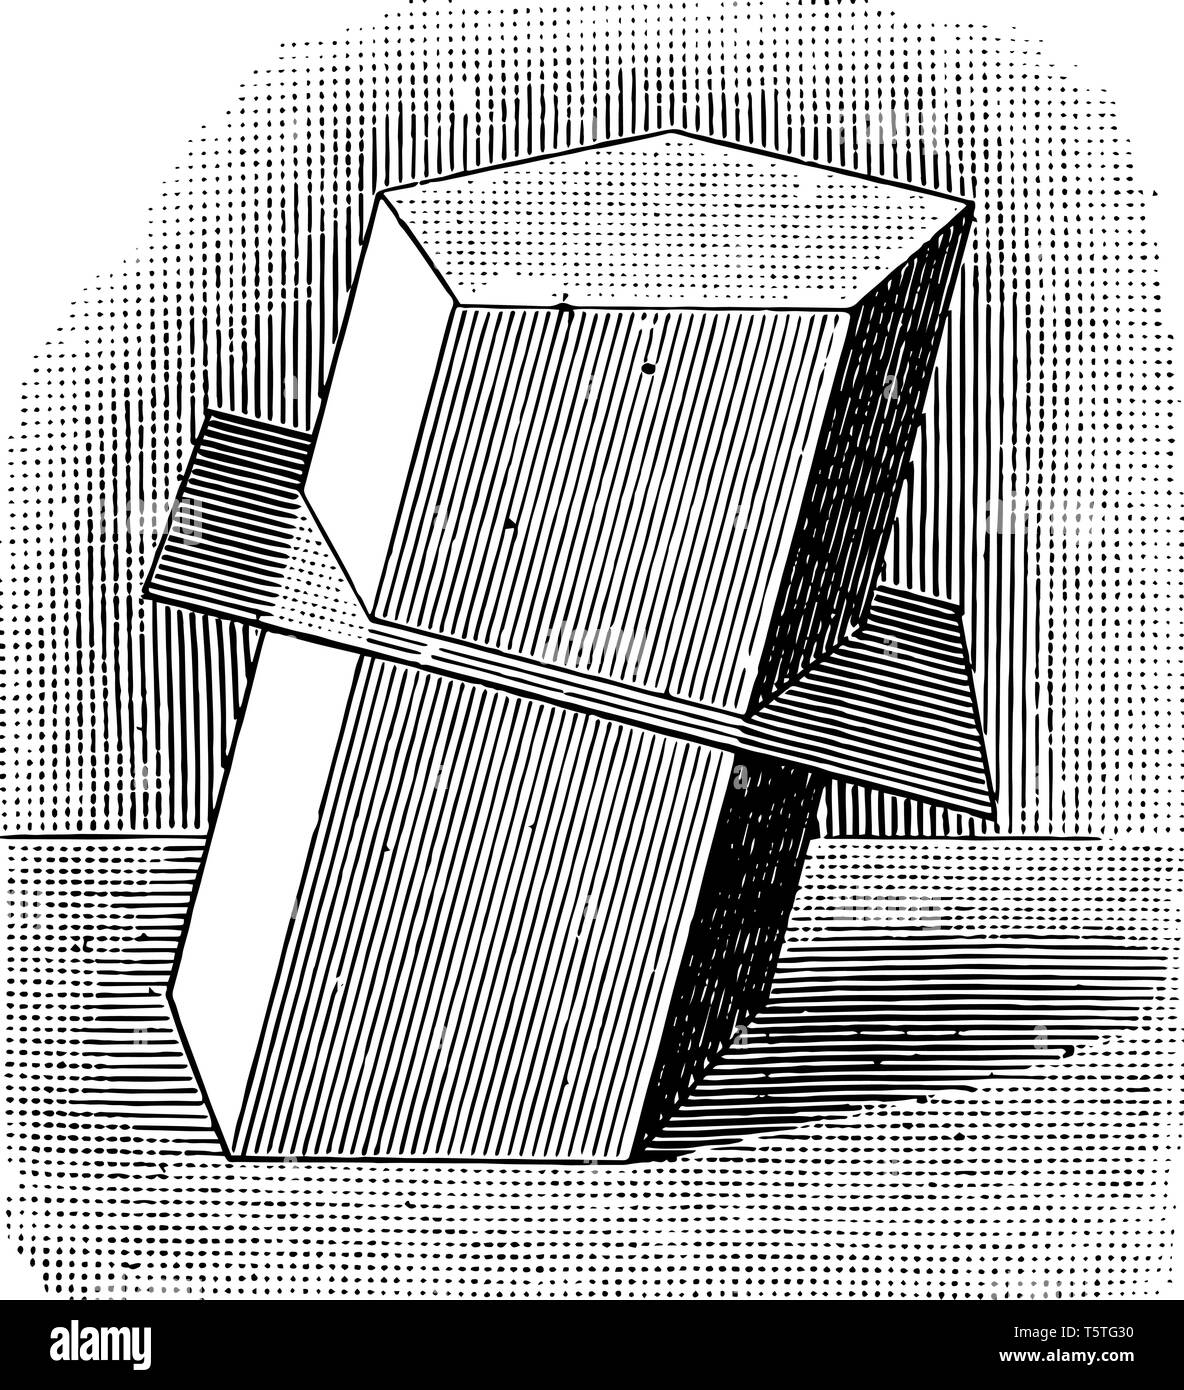 Una immagine di una pianura che si interseca con il prisma del mezzo, vintage disegno della linea di incisione o illustrazione. Illustrazione Vettoriale